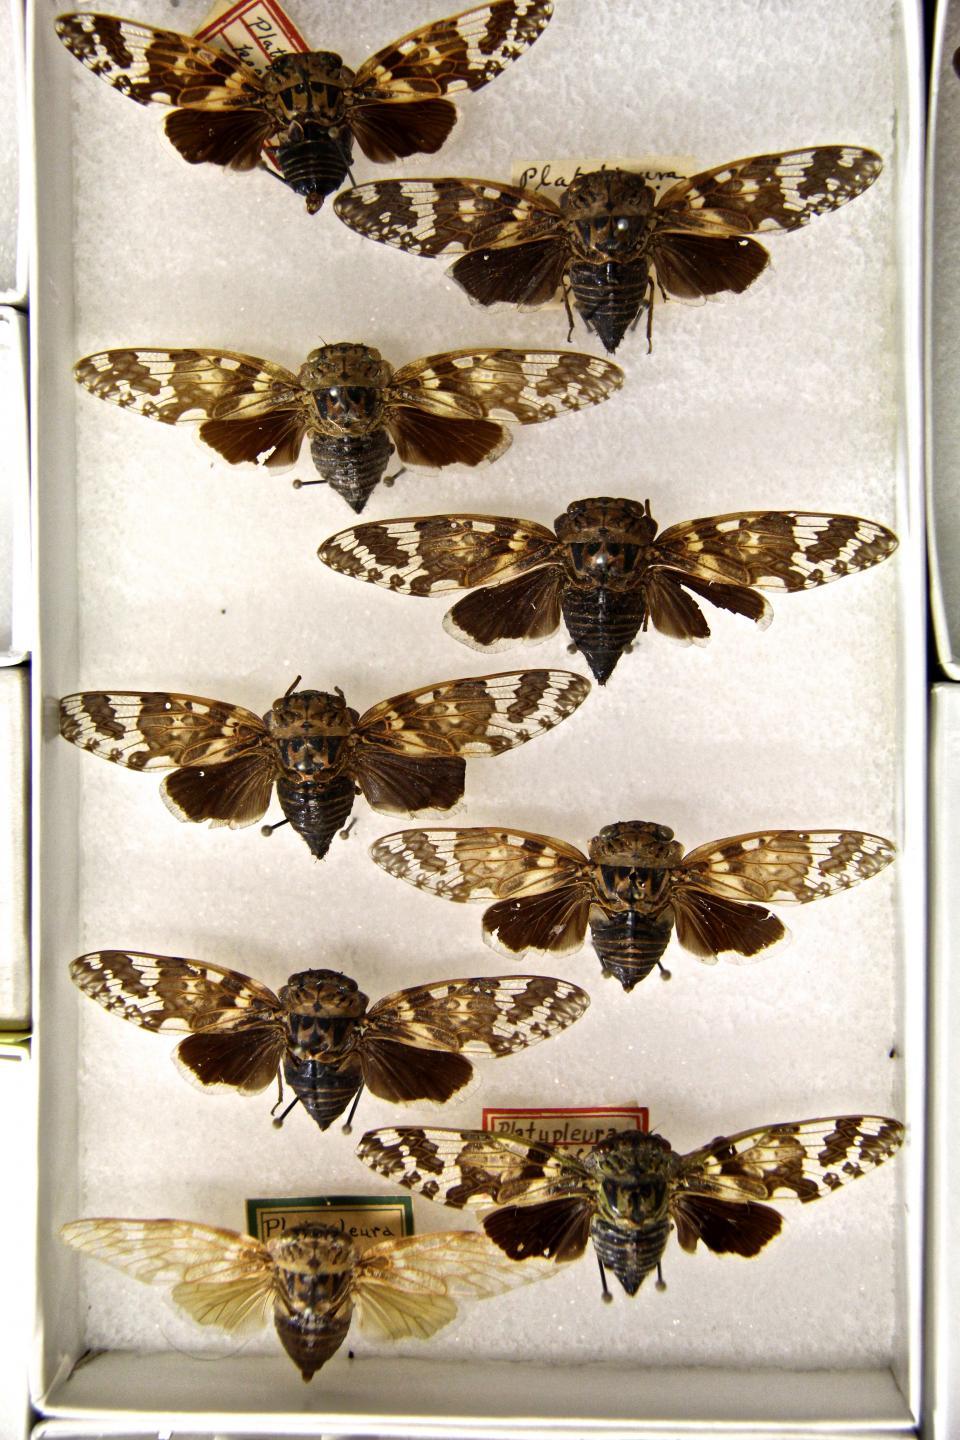 Tray of cicadas